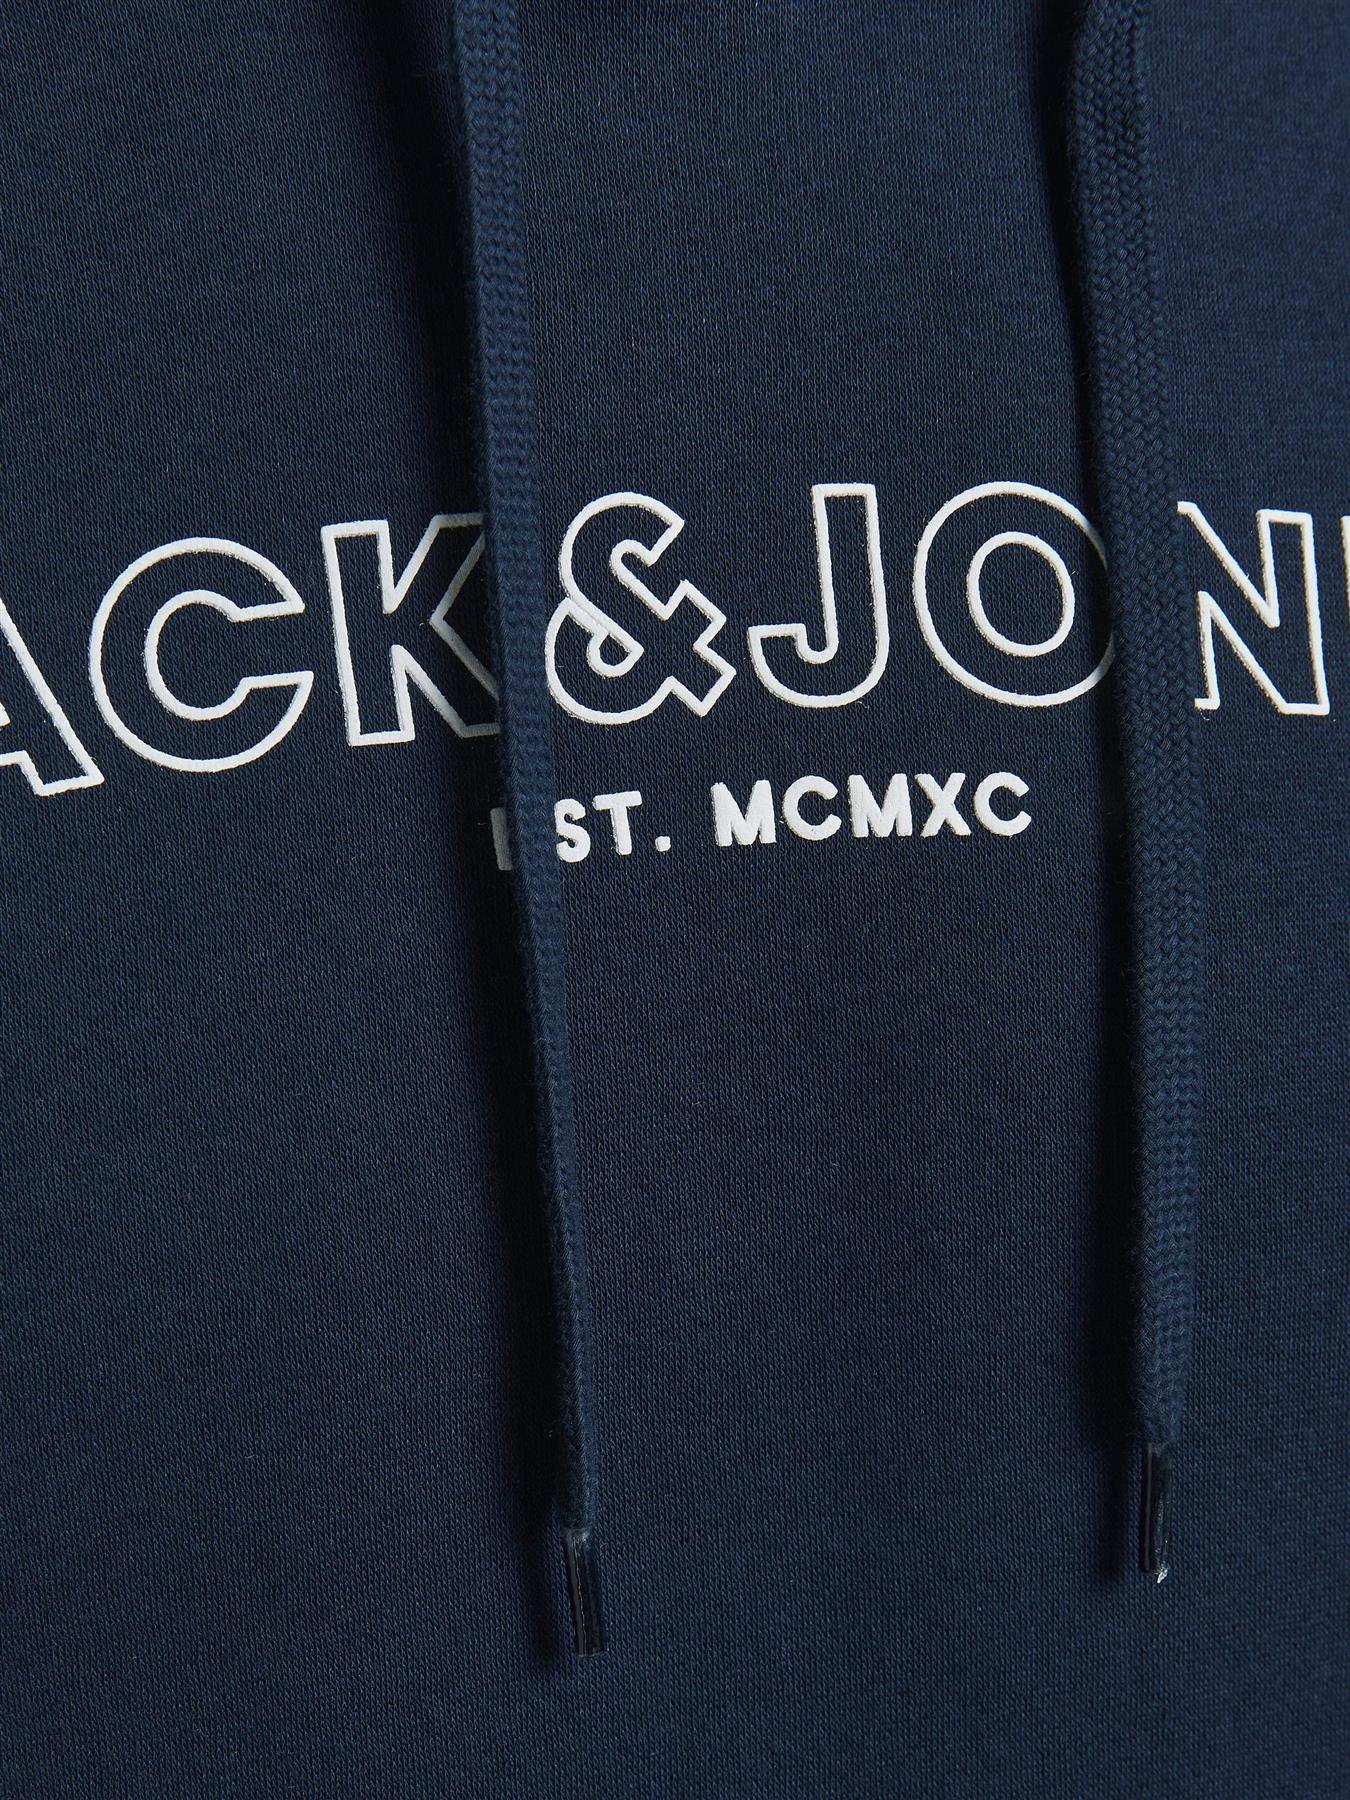 Jack & Jones Mens 'Bank' Hoody in Navy